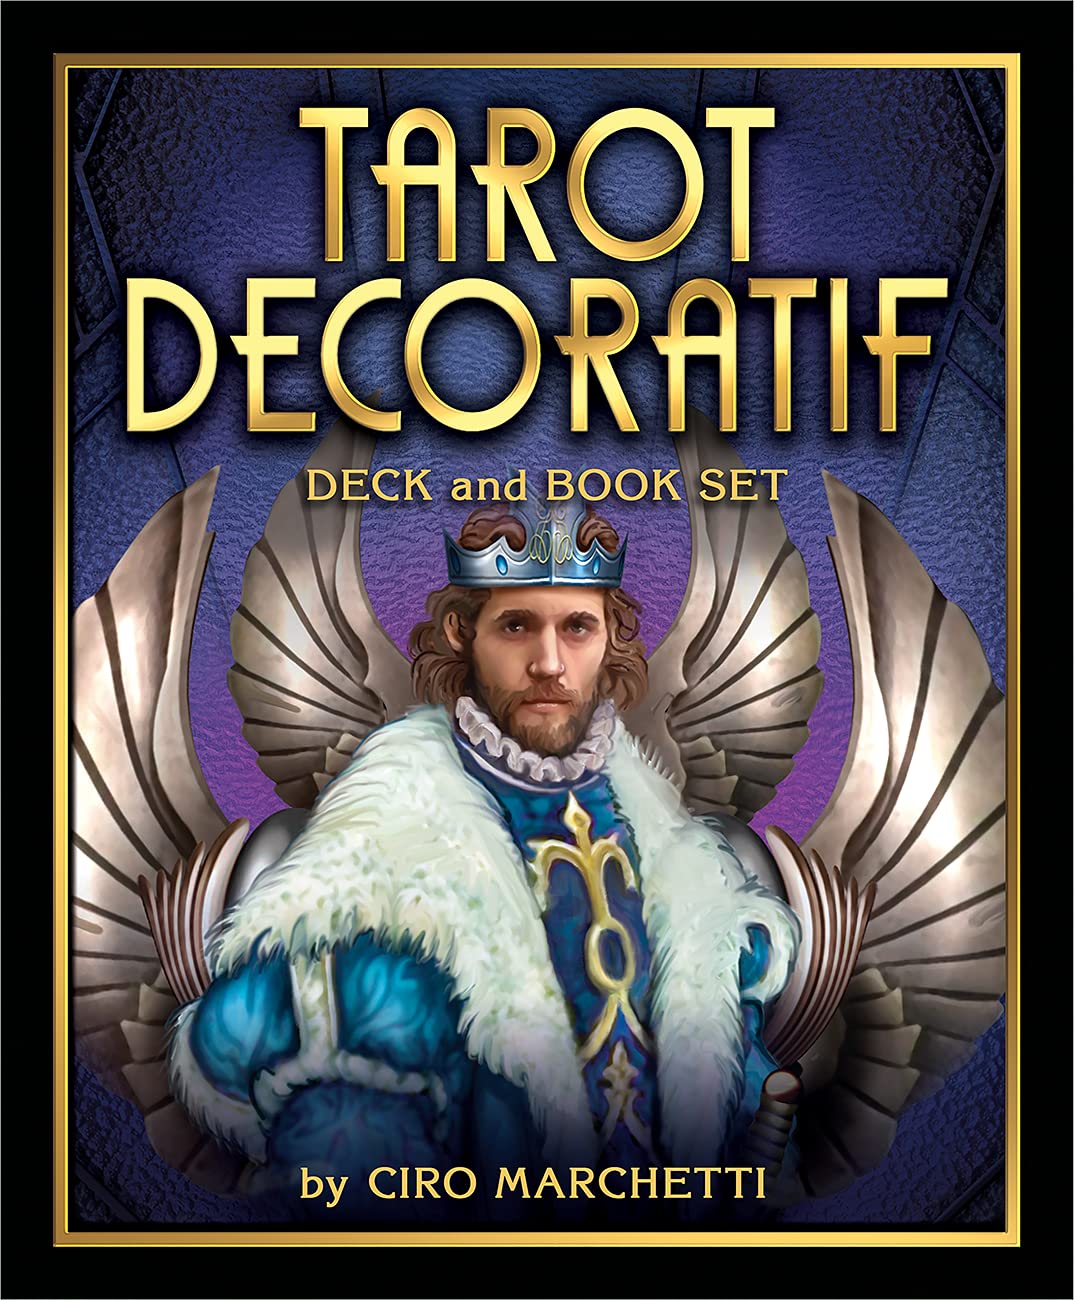 Tiskanica Tarot Decoratif Deck and Book Set Ciro Marchetti